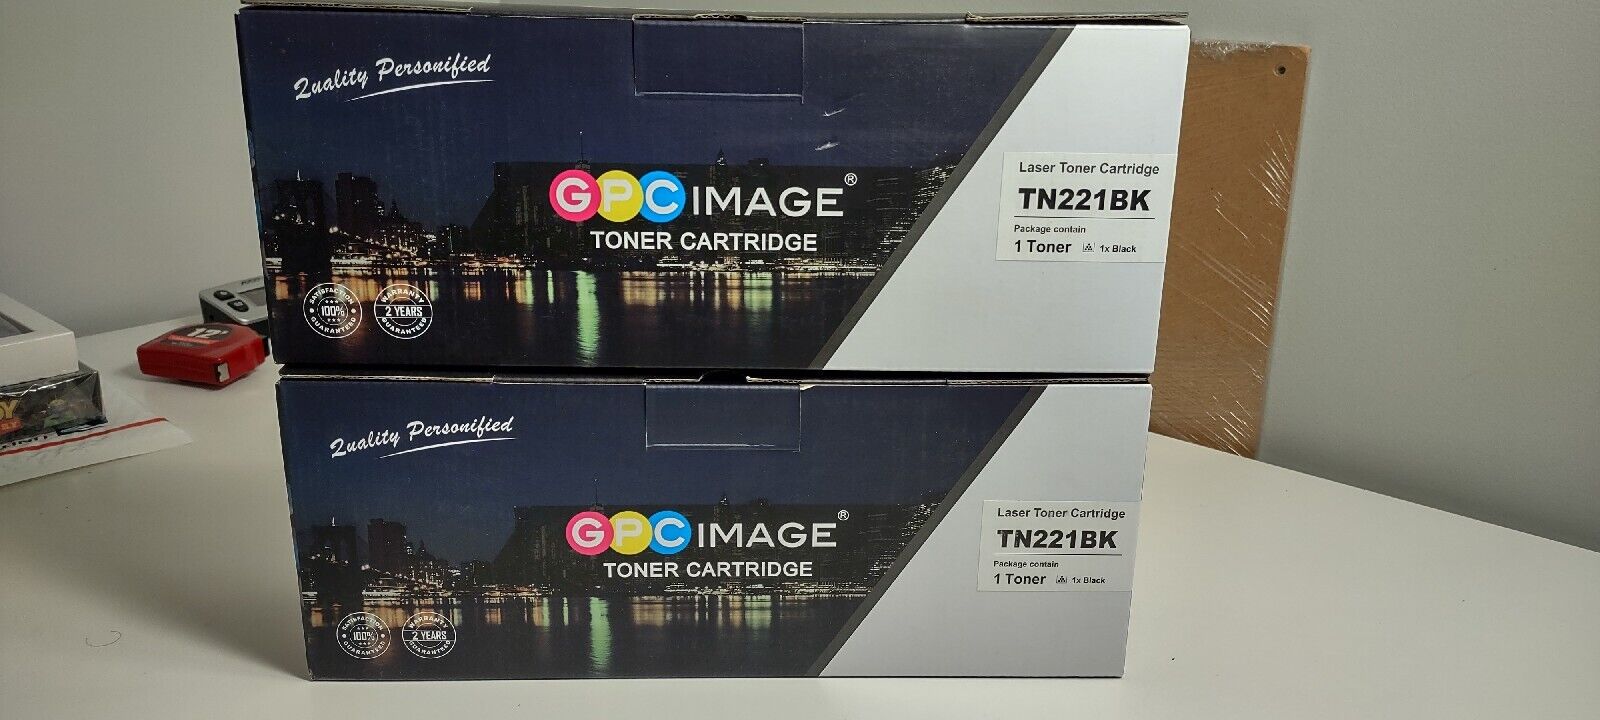 Two Brand New GPCIMAGE TN221BK Laser Toner Cartridges